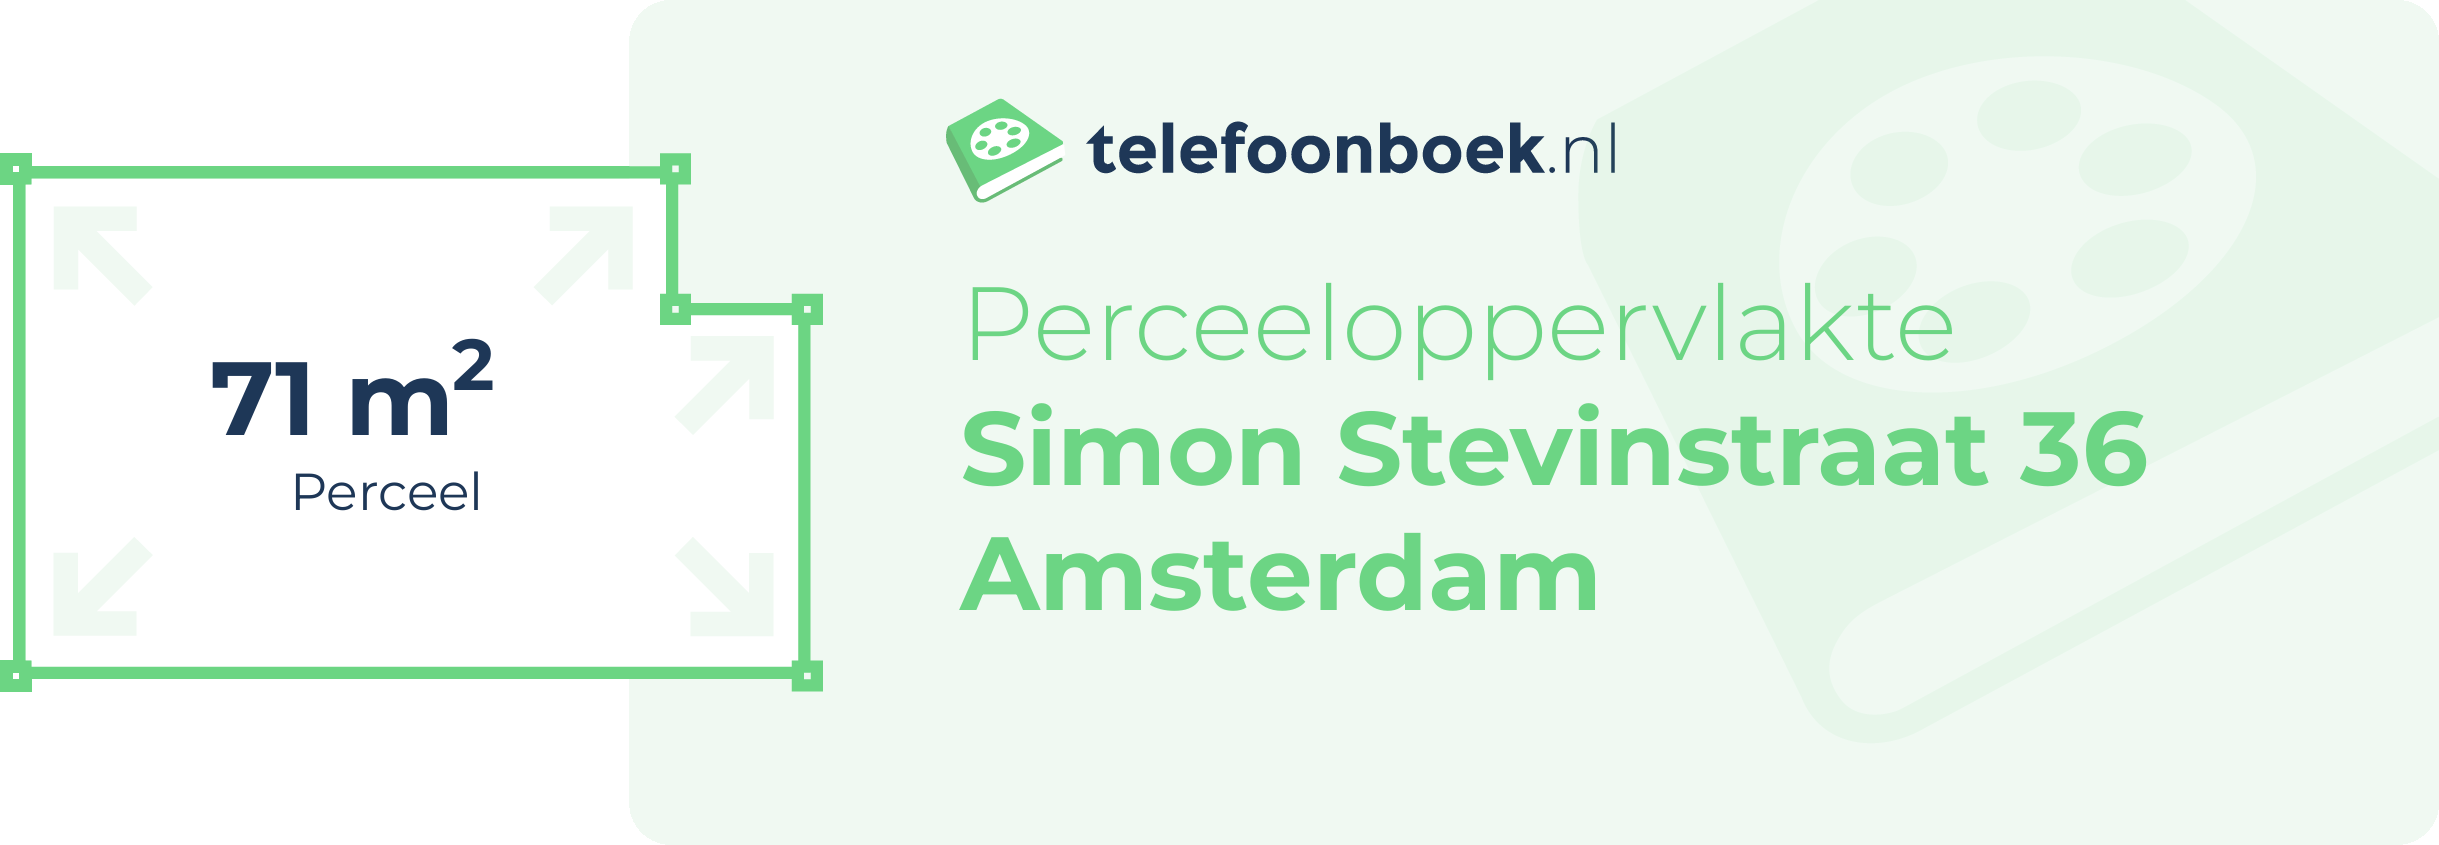 Perceeloppervlakte Simon Stevinstraat 36 Amsterdam